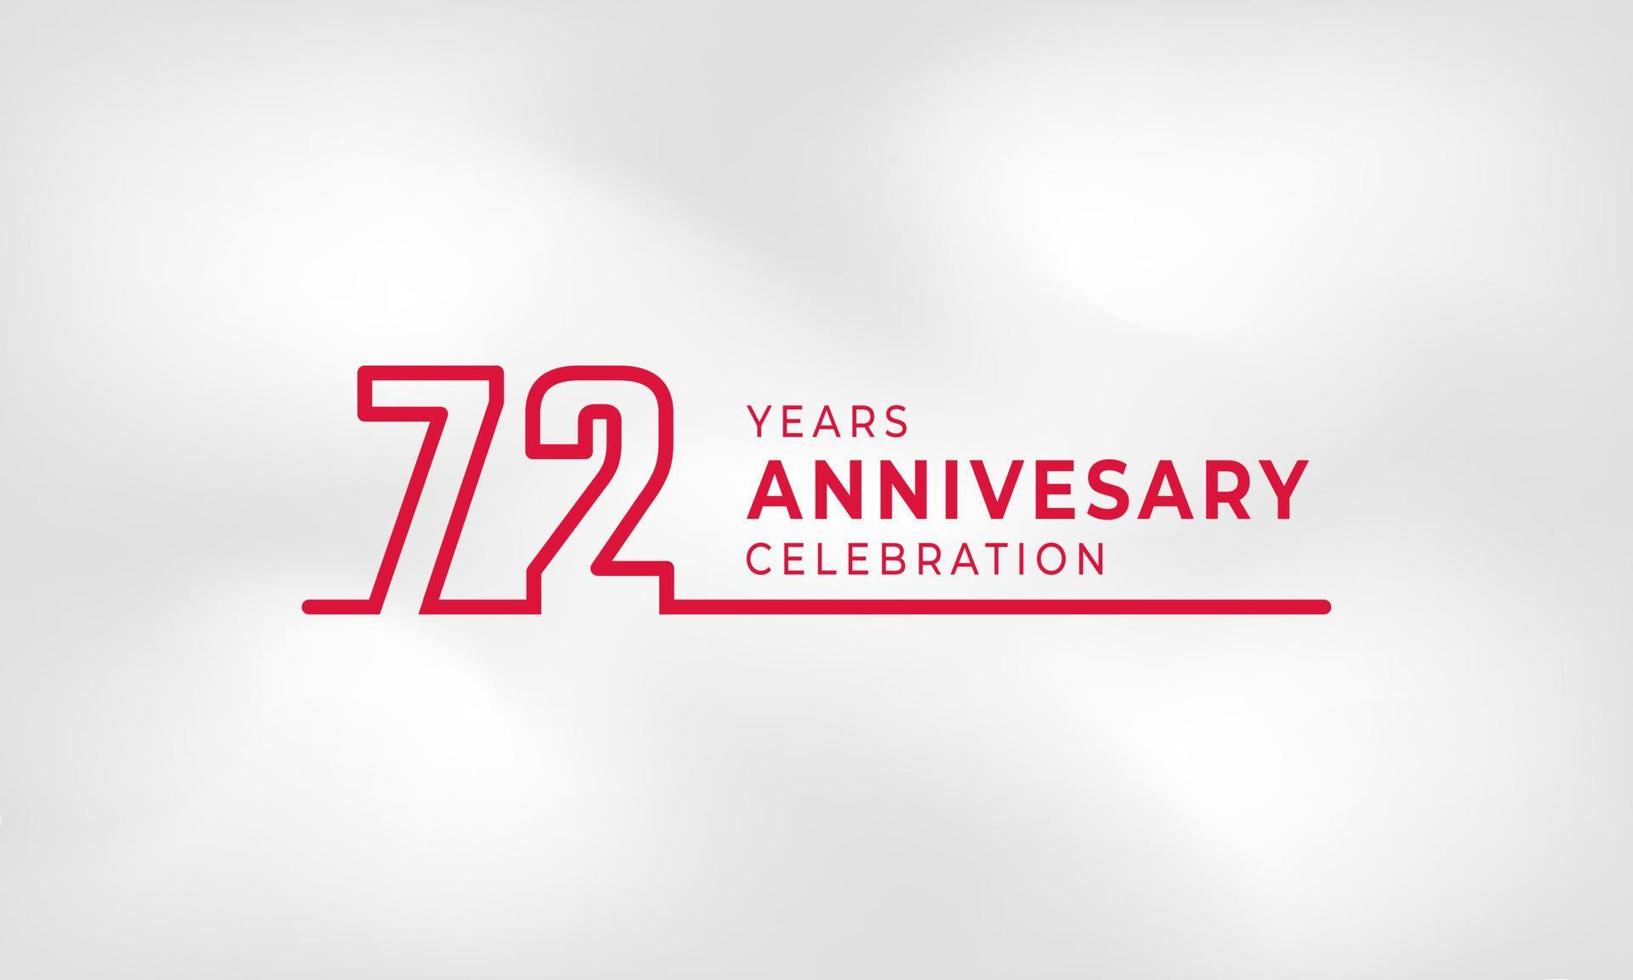 Celebrazione dell'anniversario di 72 anni logotipo collegato numero di contorno colore rosso per evento di celebrazione, matrimonio, biglietto di auguri e invito isolato su sfondo bianco trama vettore